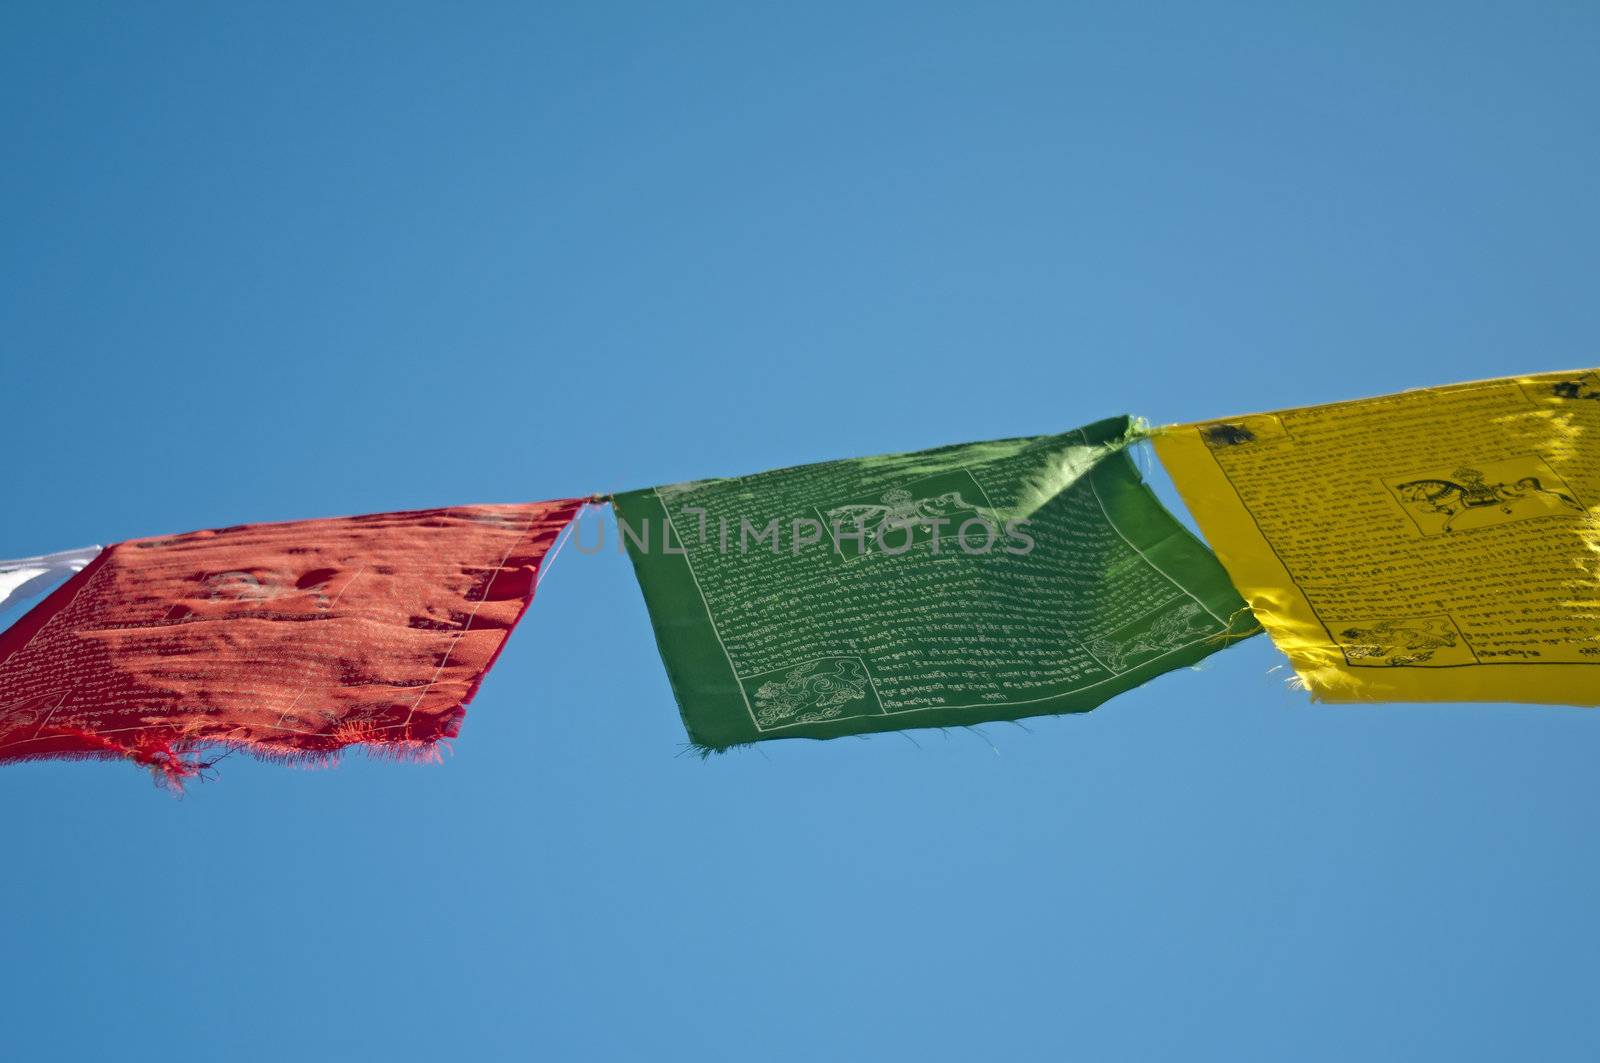 prayer flags of Tibet